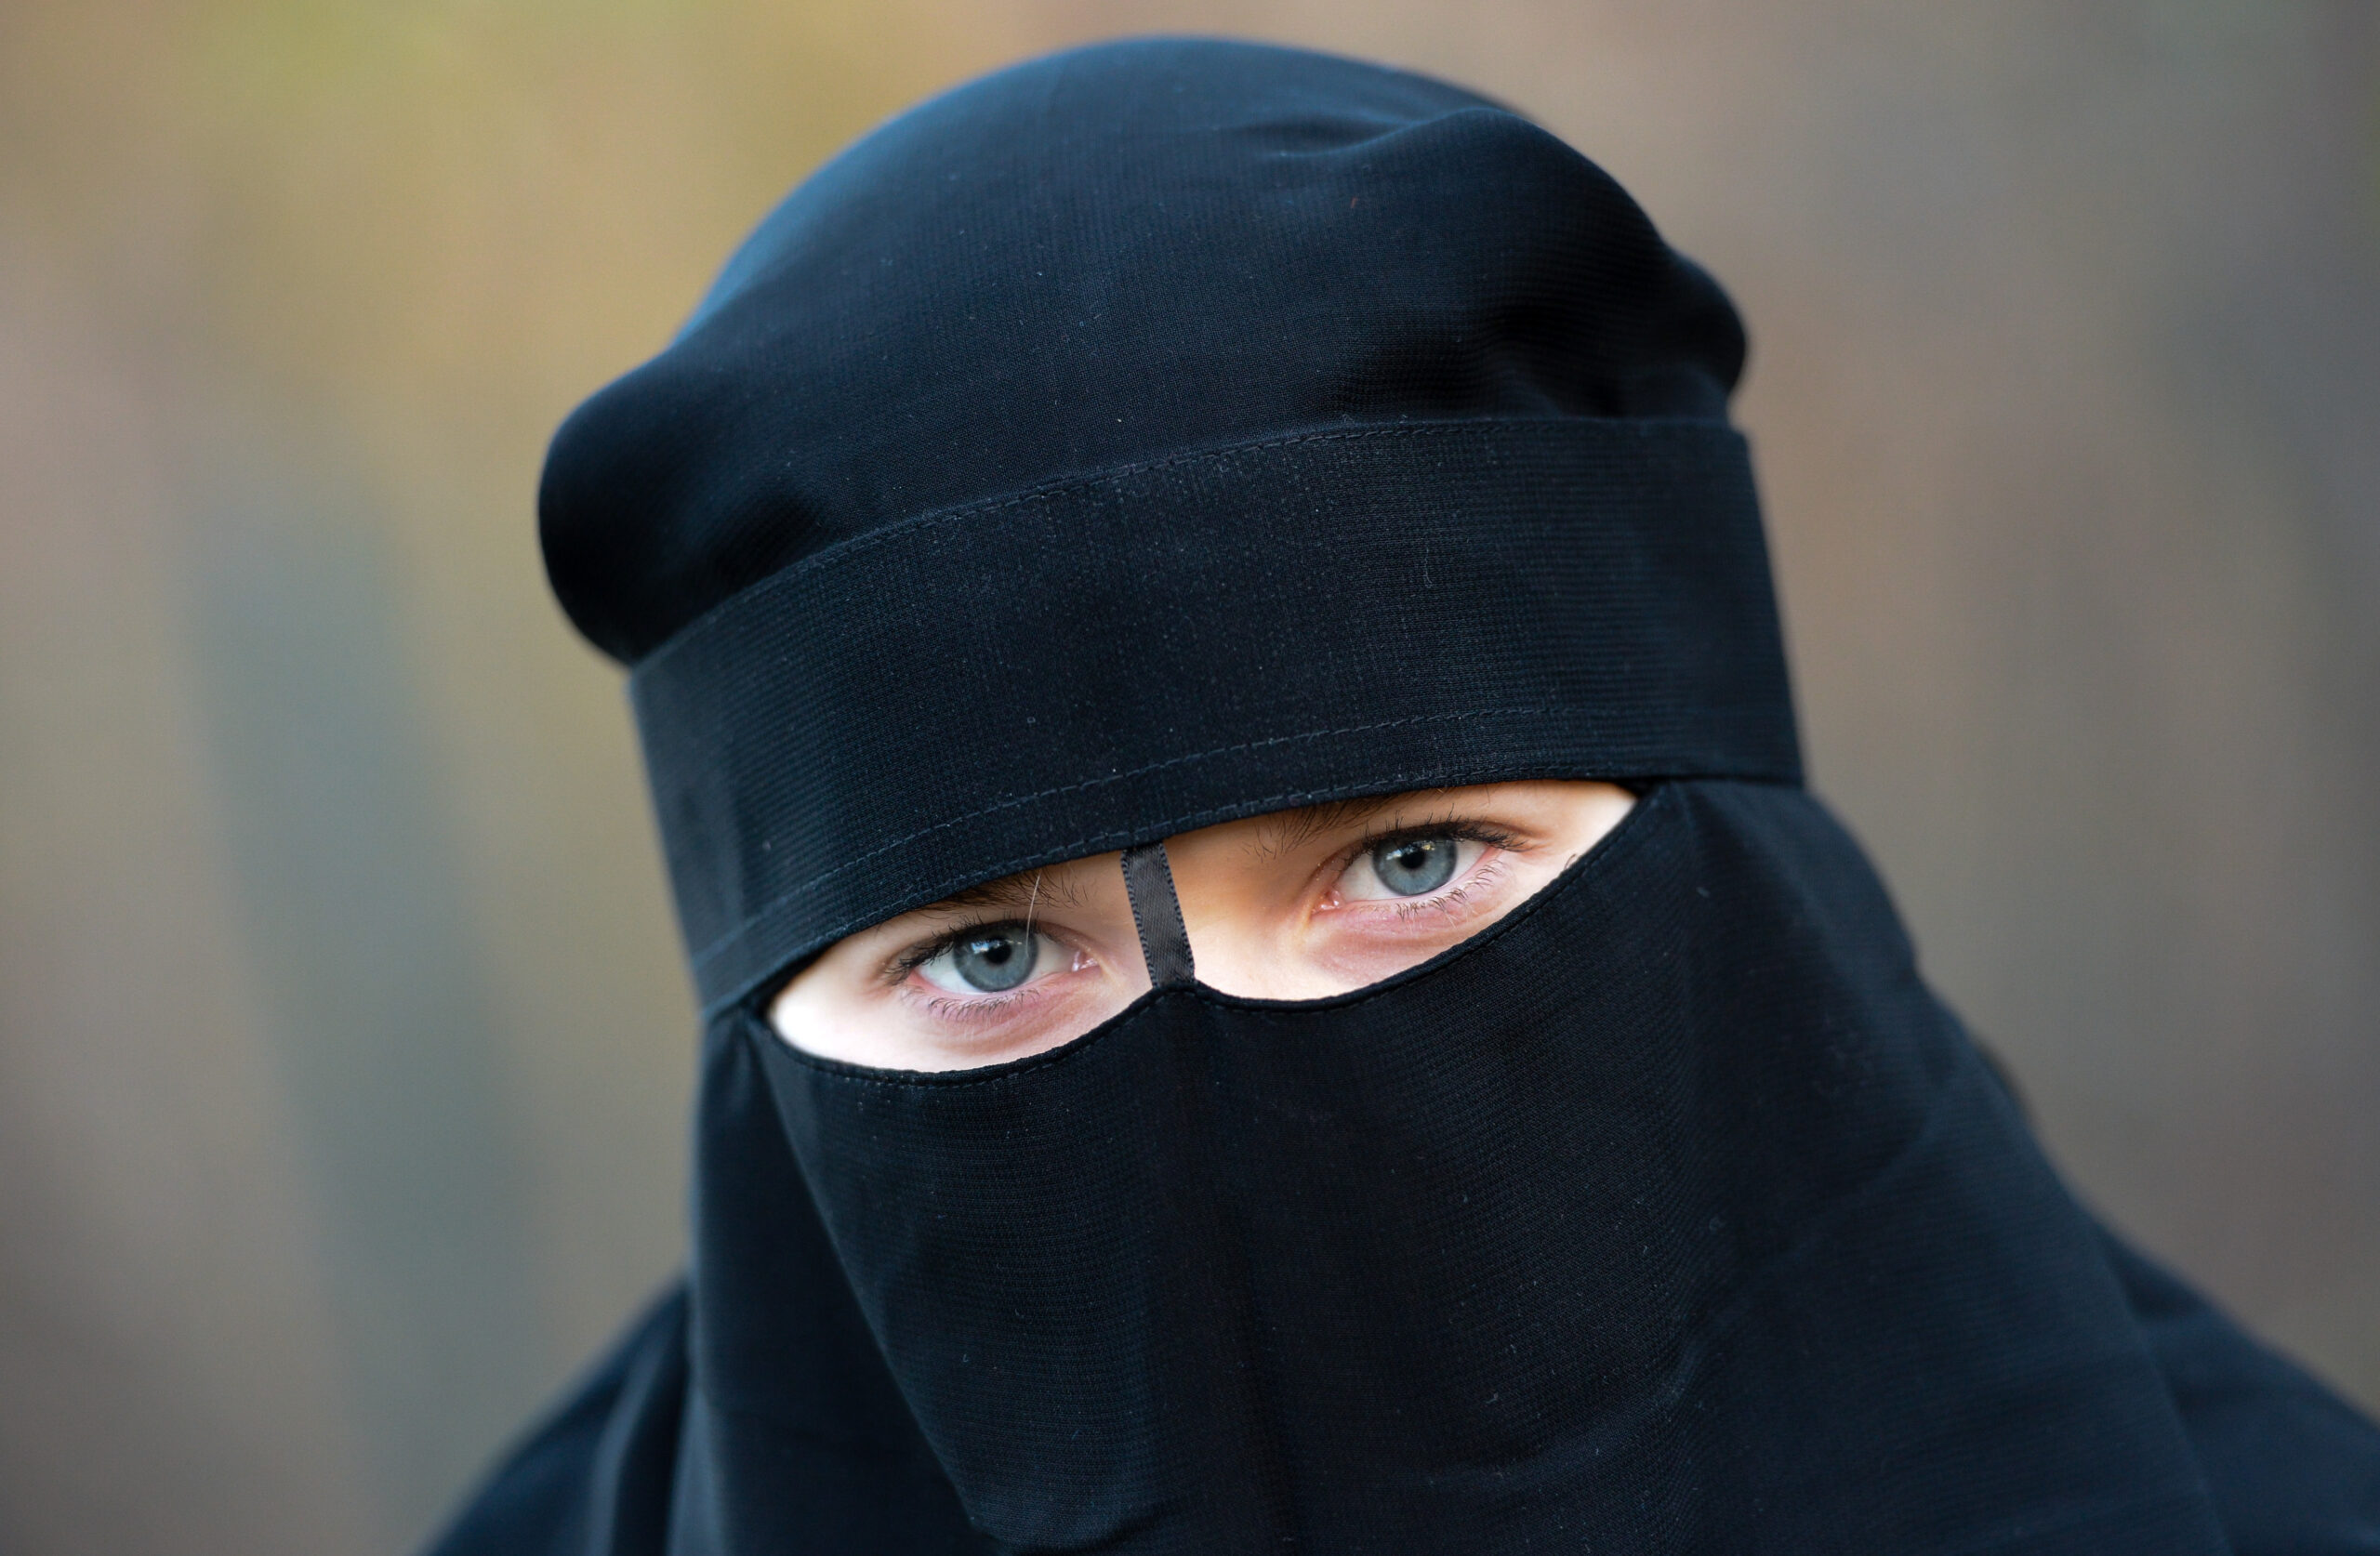 Das Mädchen trug so einen muslimischen Gesichtsschleier (Niqab), als es von dem Mann attackiert wurde.